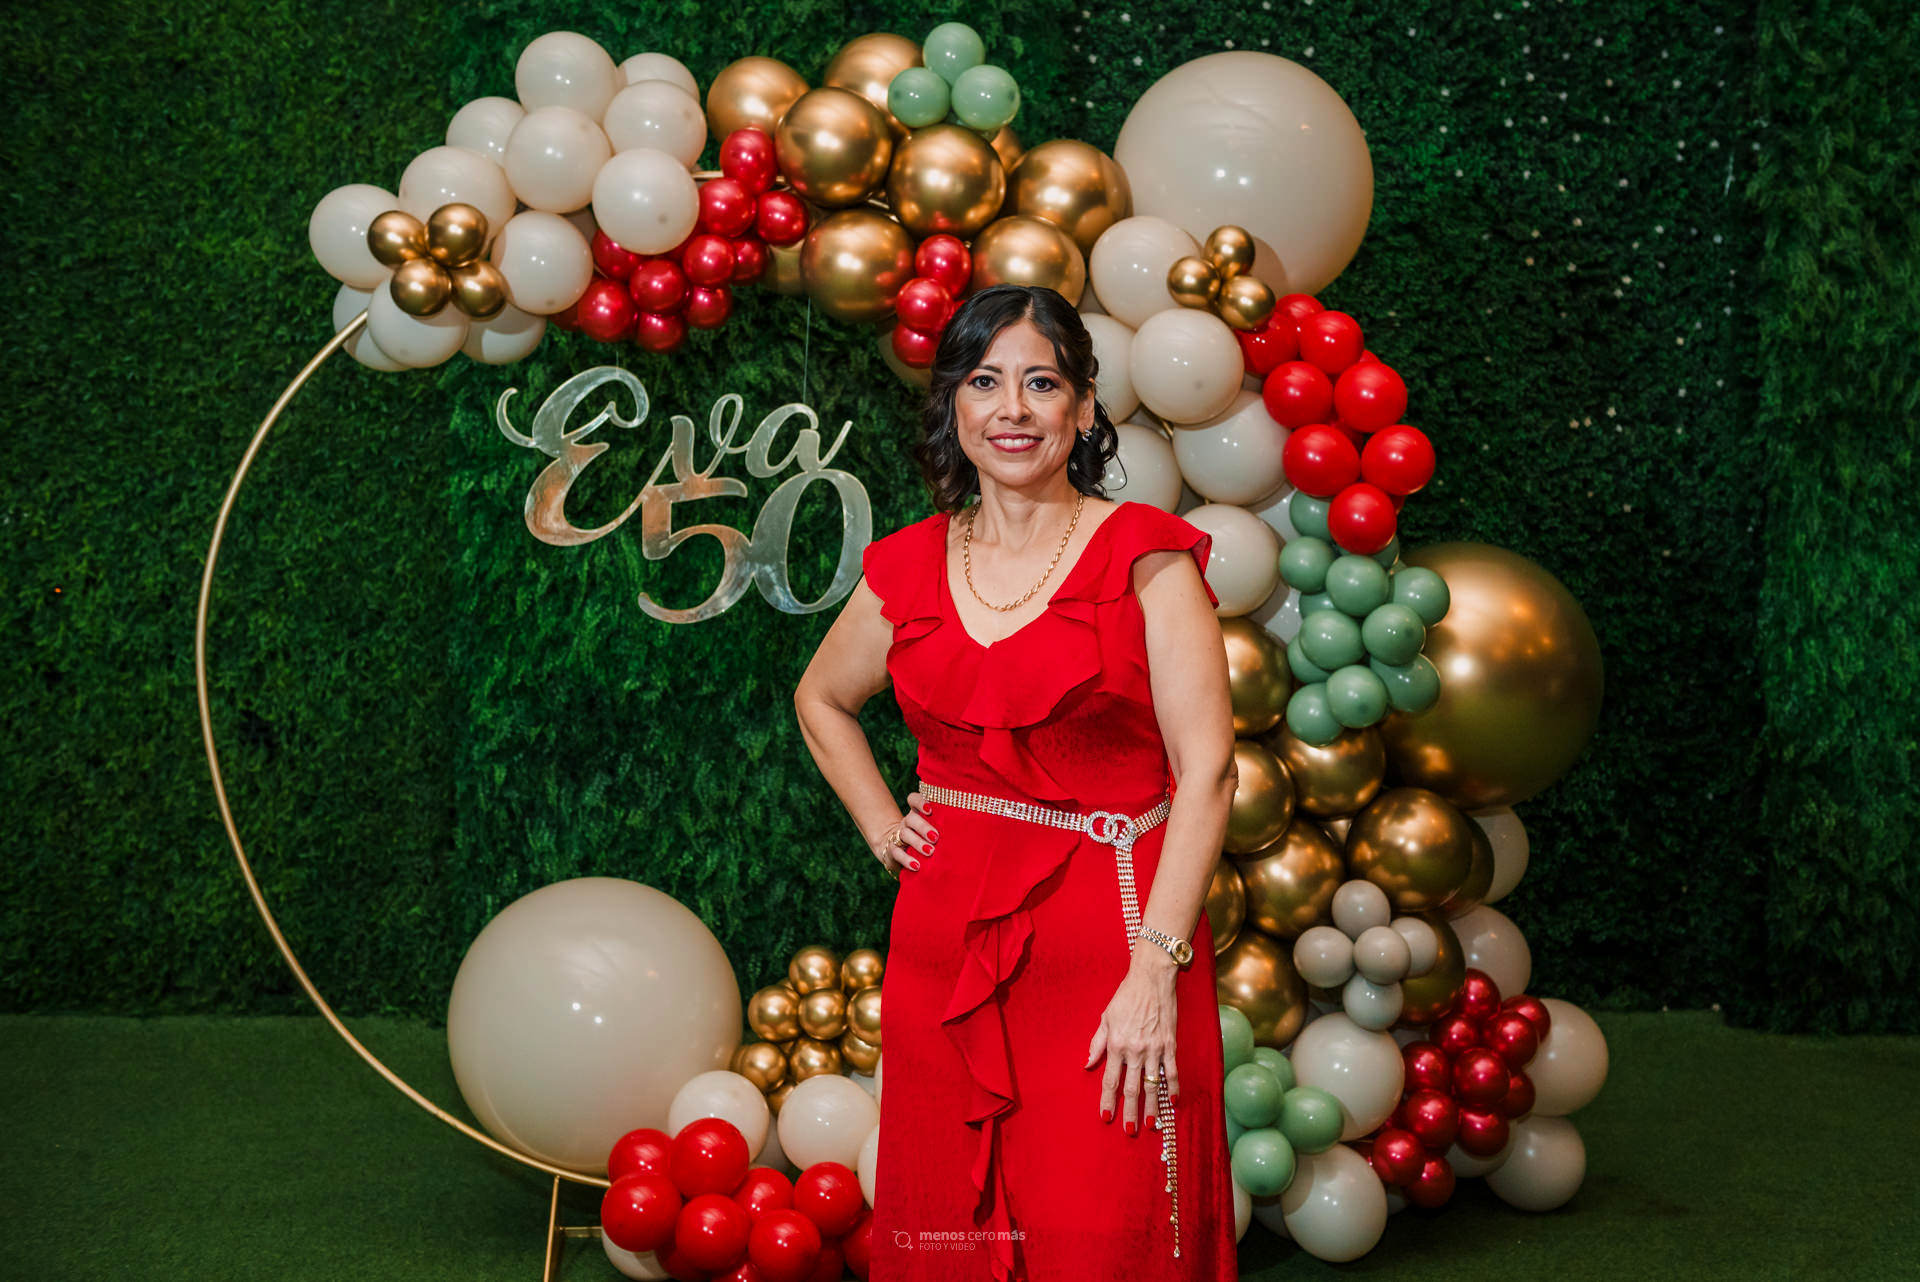 Eva irradia felicidad en su 50 aniversario, celebrado en Las Lomas Eventos con una elegante decoración en tonos rojos, beige y verdes. La imagen, capturada por Menosceromás Fotografía, muestra a la homenajeada sonriente frente a un letrero que dice "Eva 50"